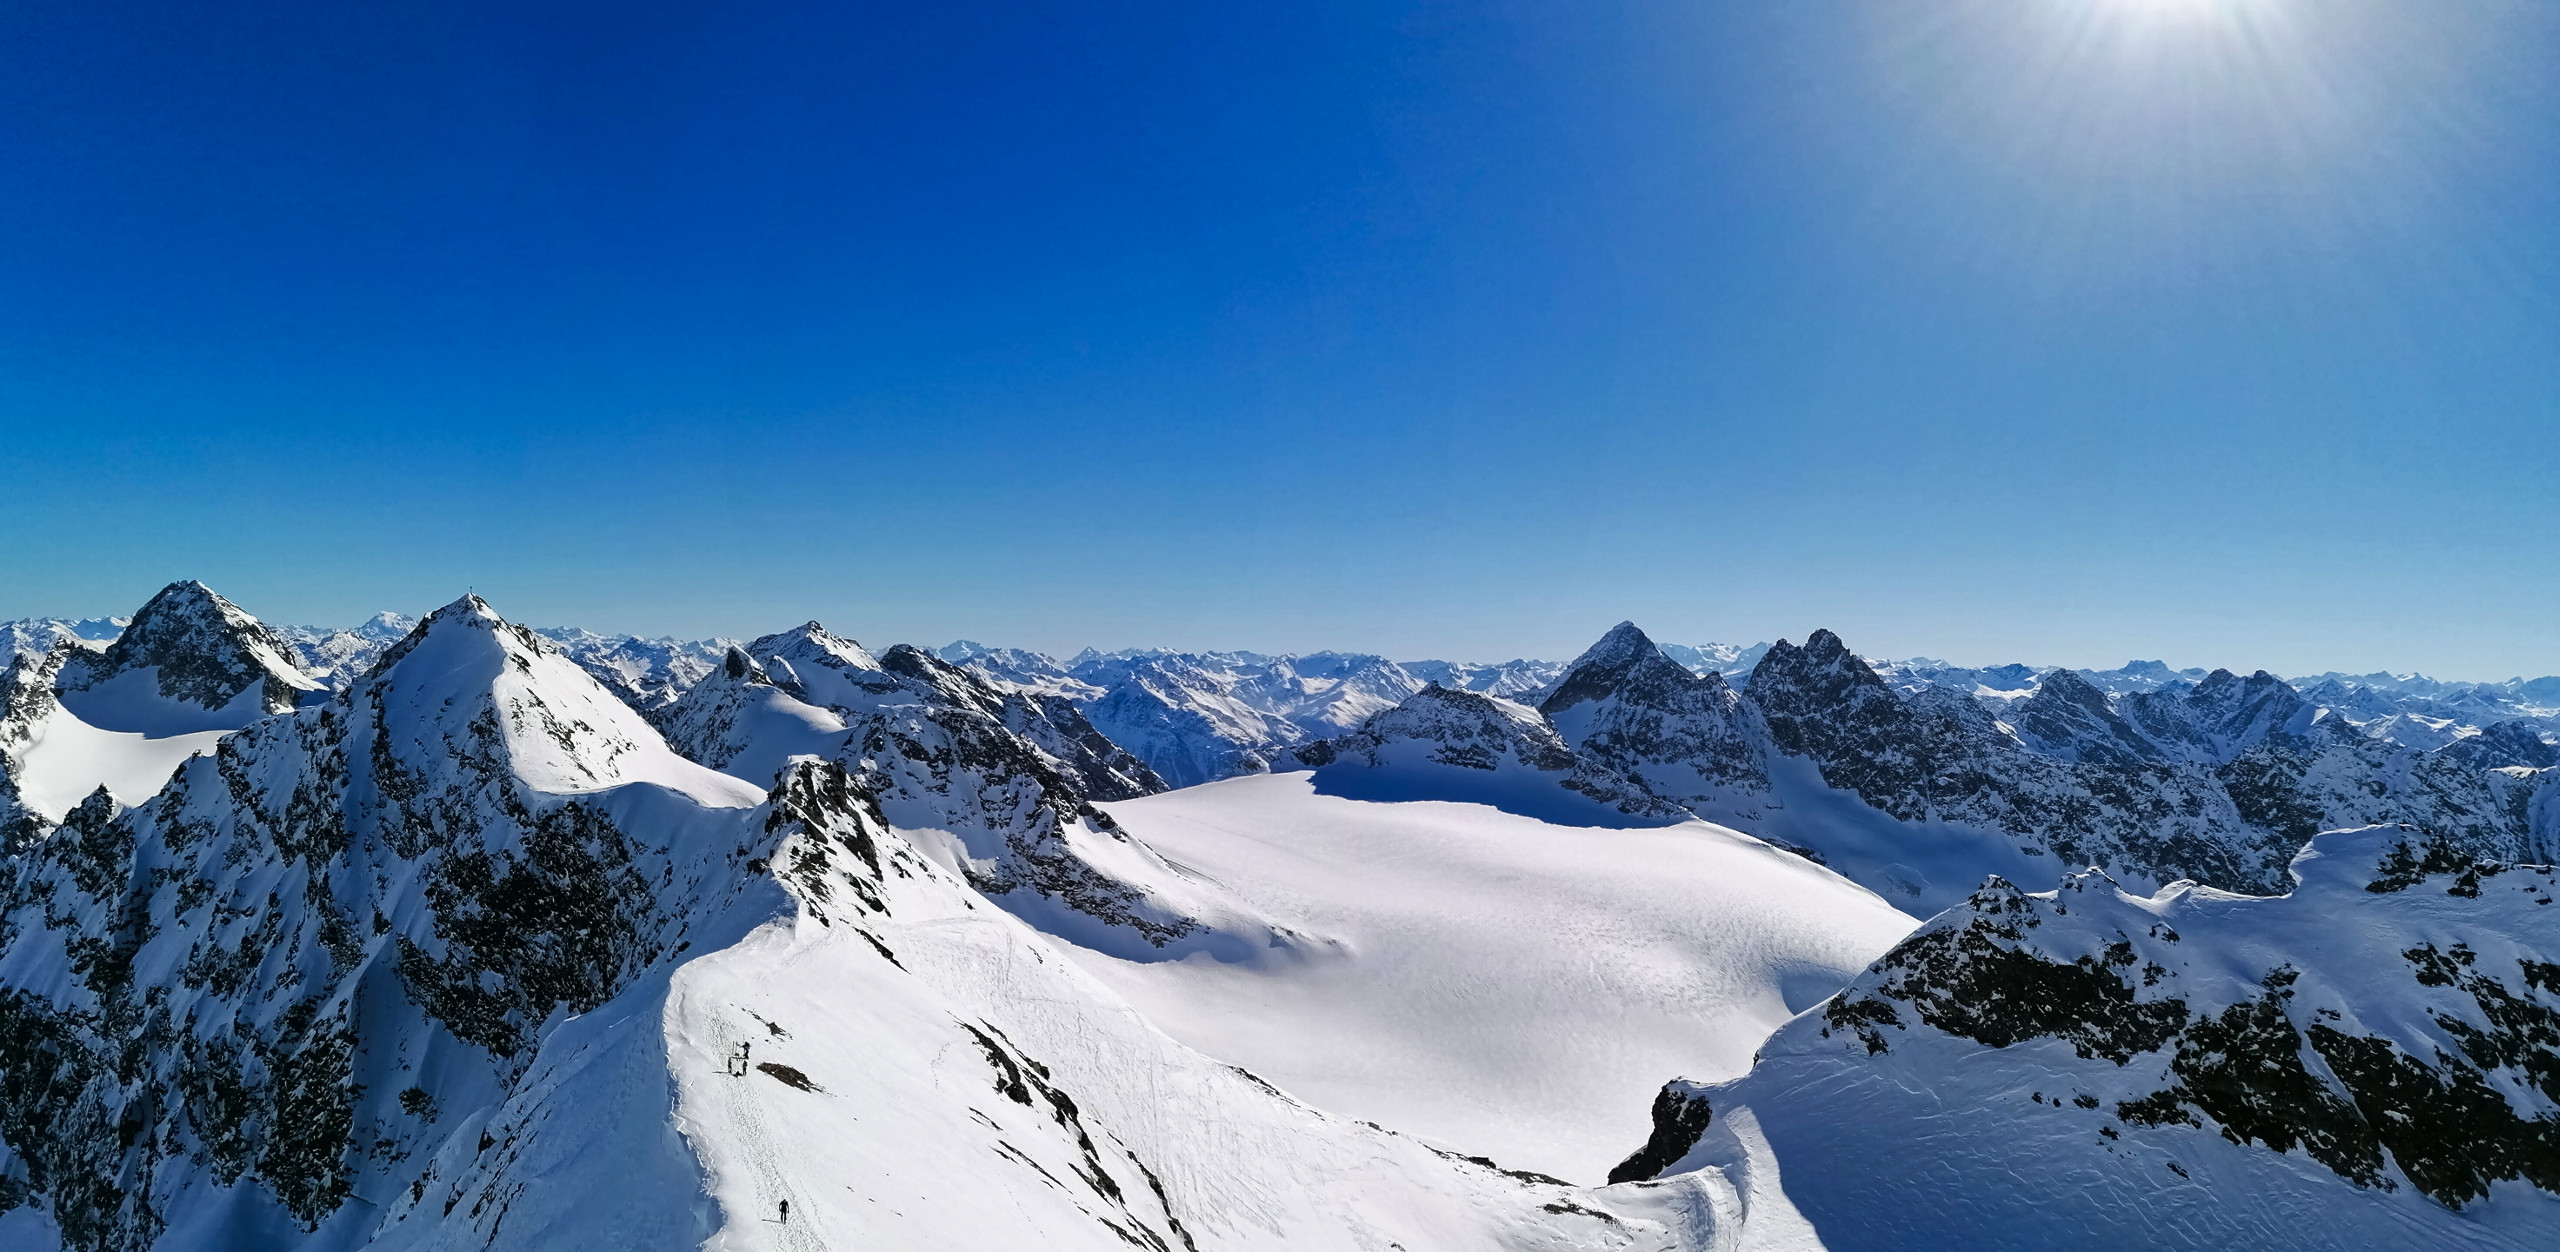 Gipfelblick: links Silvrettahorn, dainter Piz Buin, mittig der Klostertaler Gletscher mit Rotfluh. Foto: Norman und Lisa